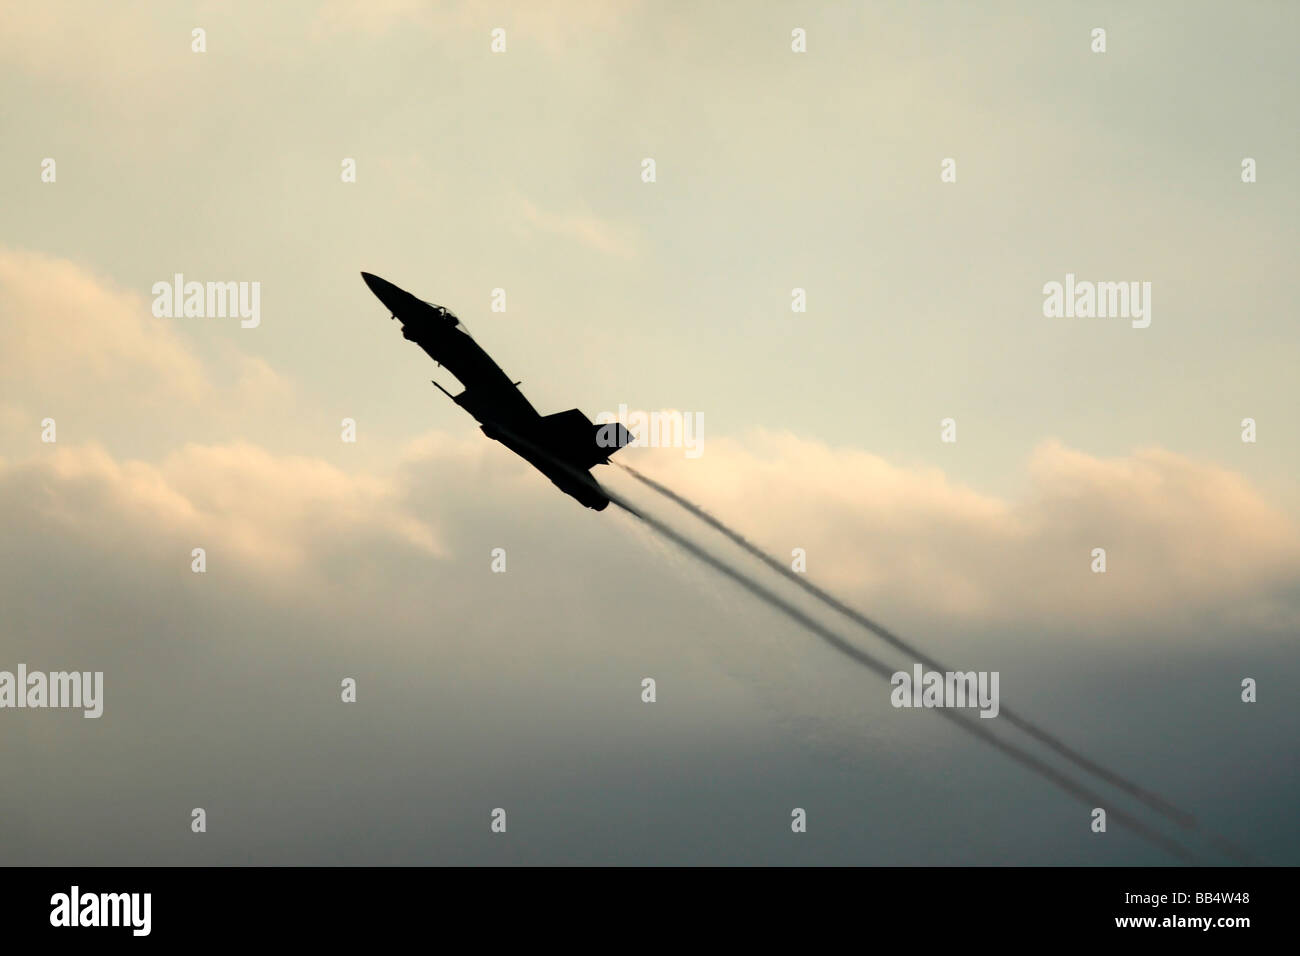 Une vue latérale d'un F/A-18 Hornet Jet Fighter dans une montée raide avec de la vapeur d'extrémités d'aile Banque D'Images